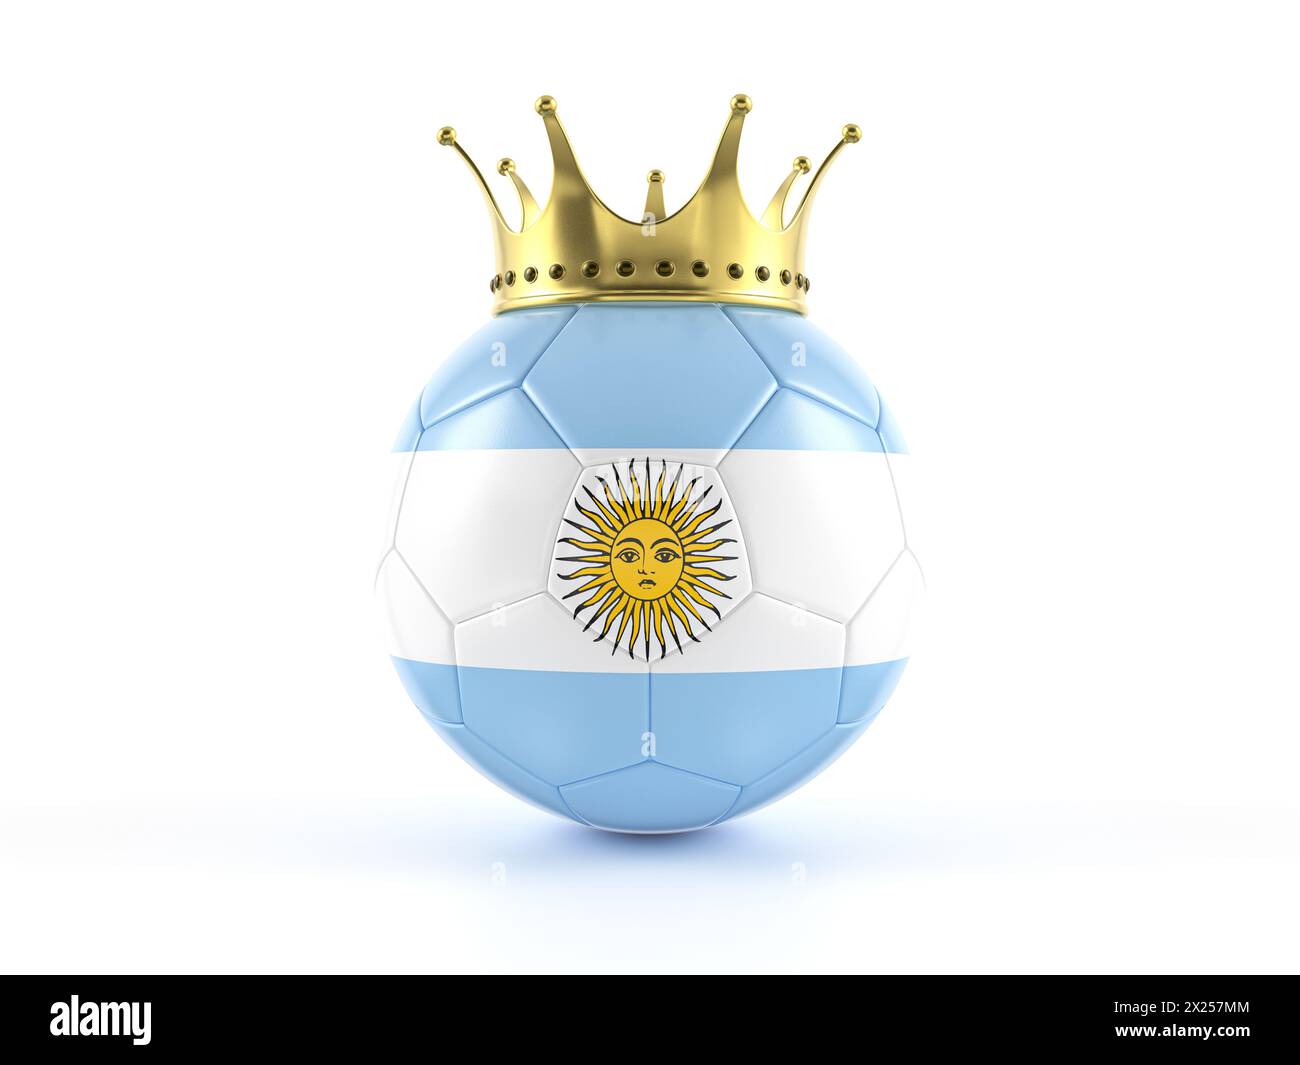 Argentine drapeau ballon de football avec couronne sur fond blanc. illustration 3d. Banque D'Images